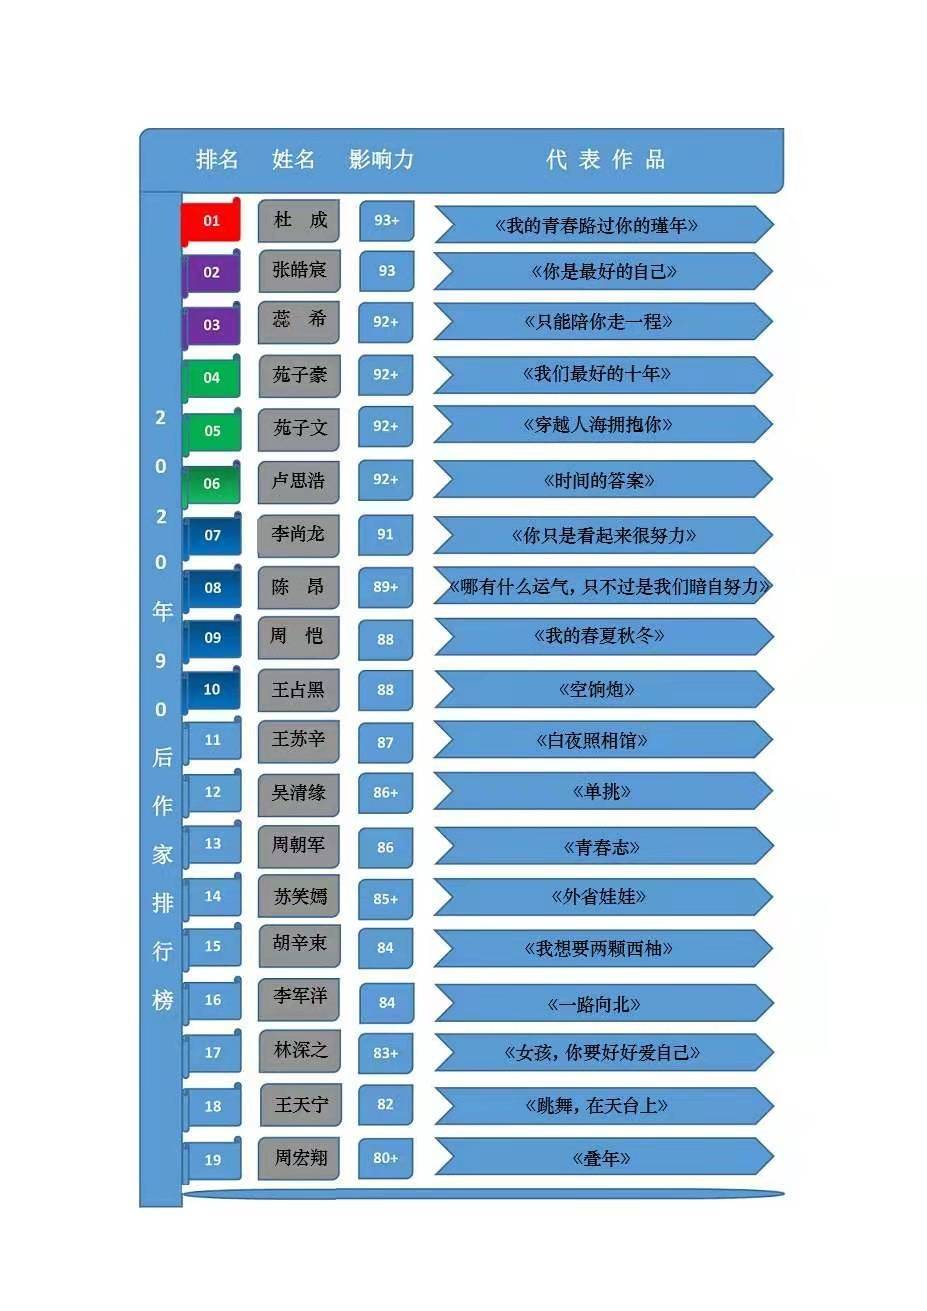 2011福布斯中国慈善基金会榜_阿国网络随笔2011_2011中国随笔排行榜